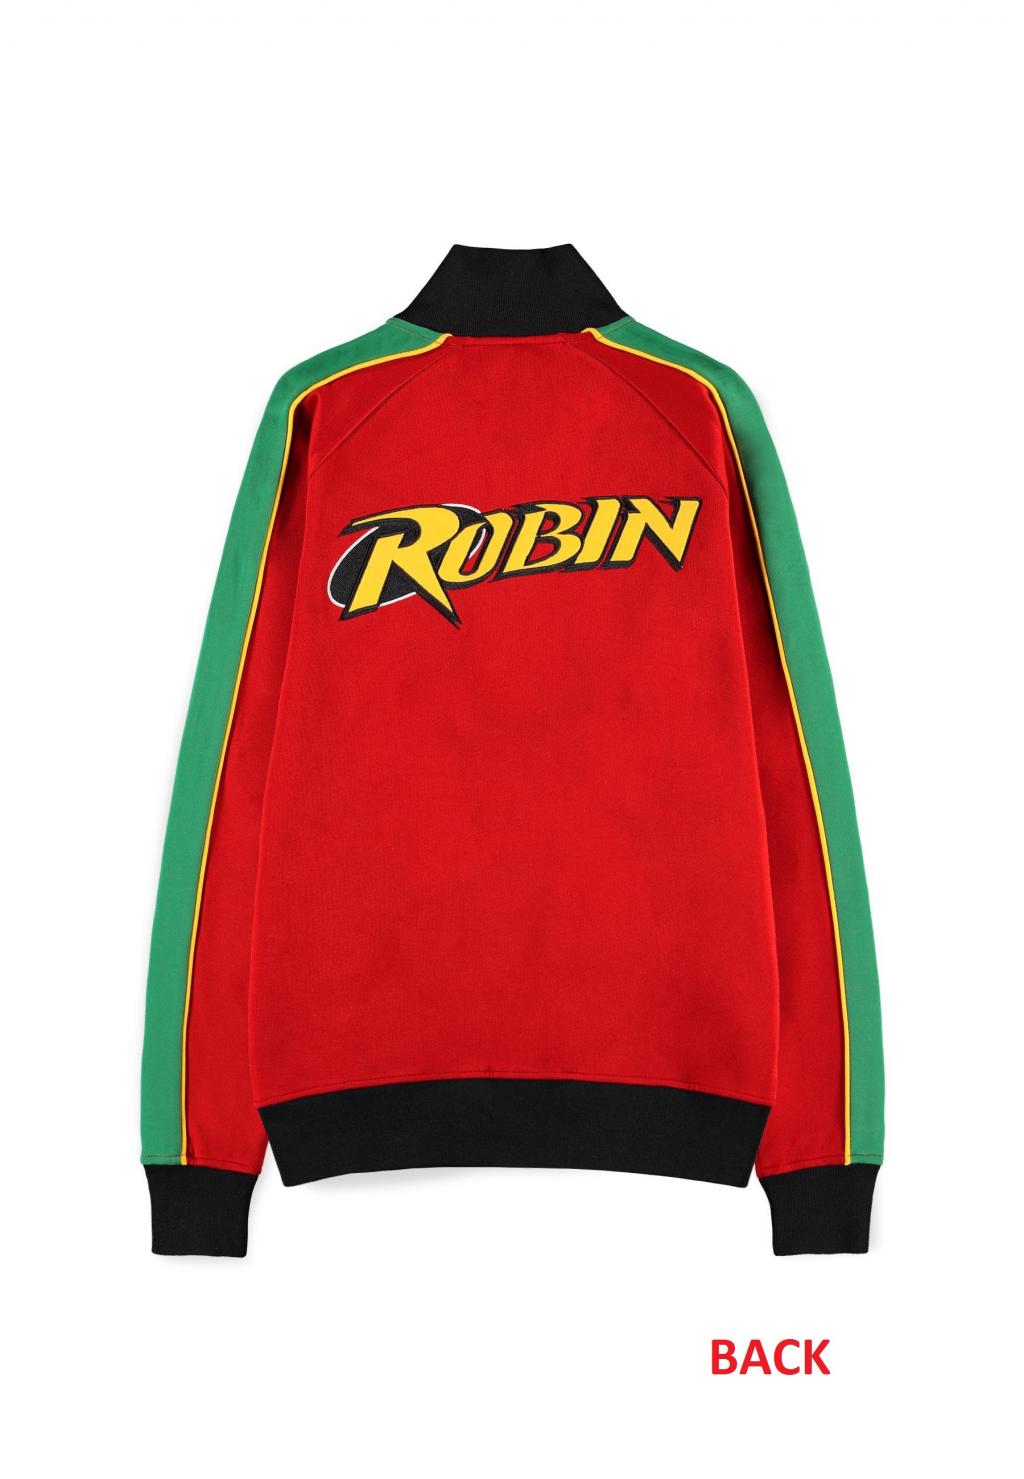 GOTHAM KNIGHTS - Robin - Men's Track Jacket (L)